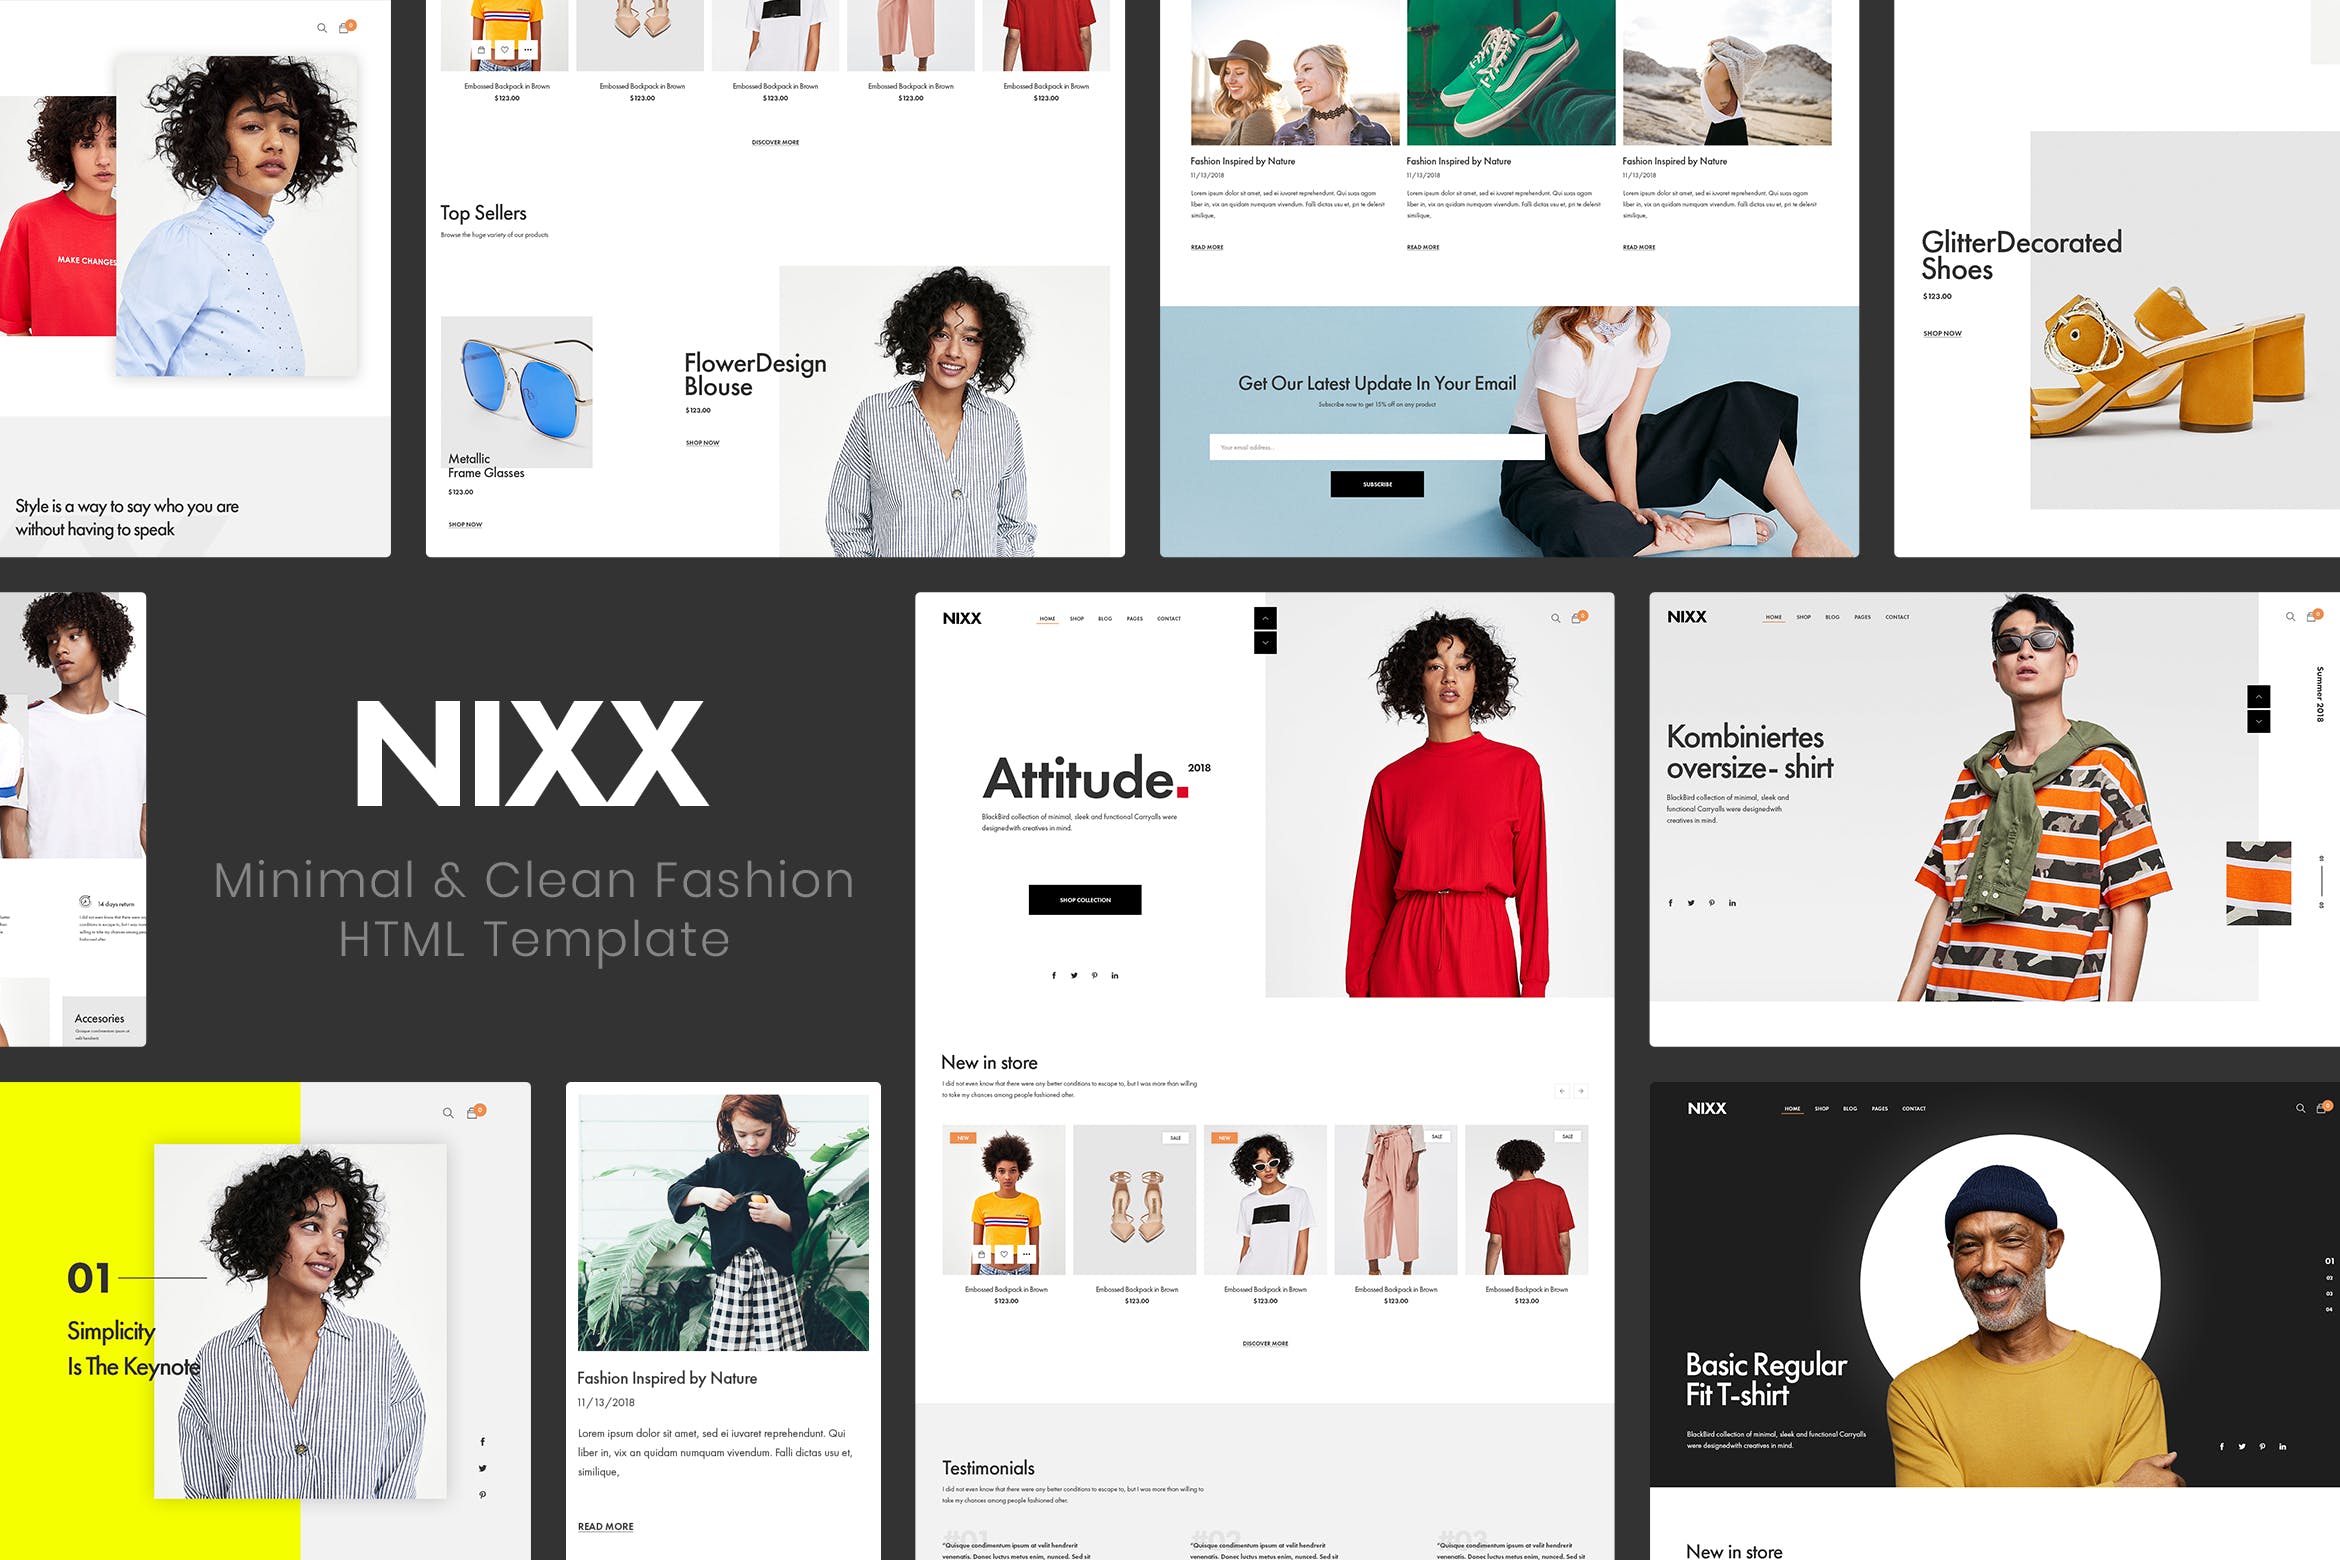 极简主义时尚主题网站HTML网上商城模板非凡图库精选 NIXX | Minimal & Clean Fashion HTML Template插图